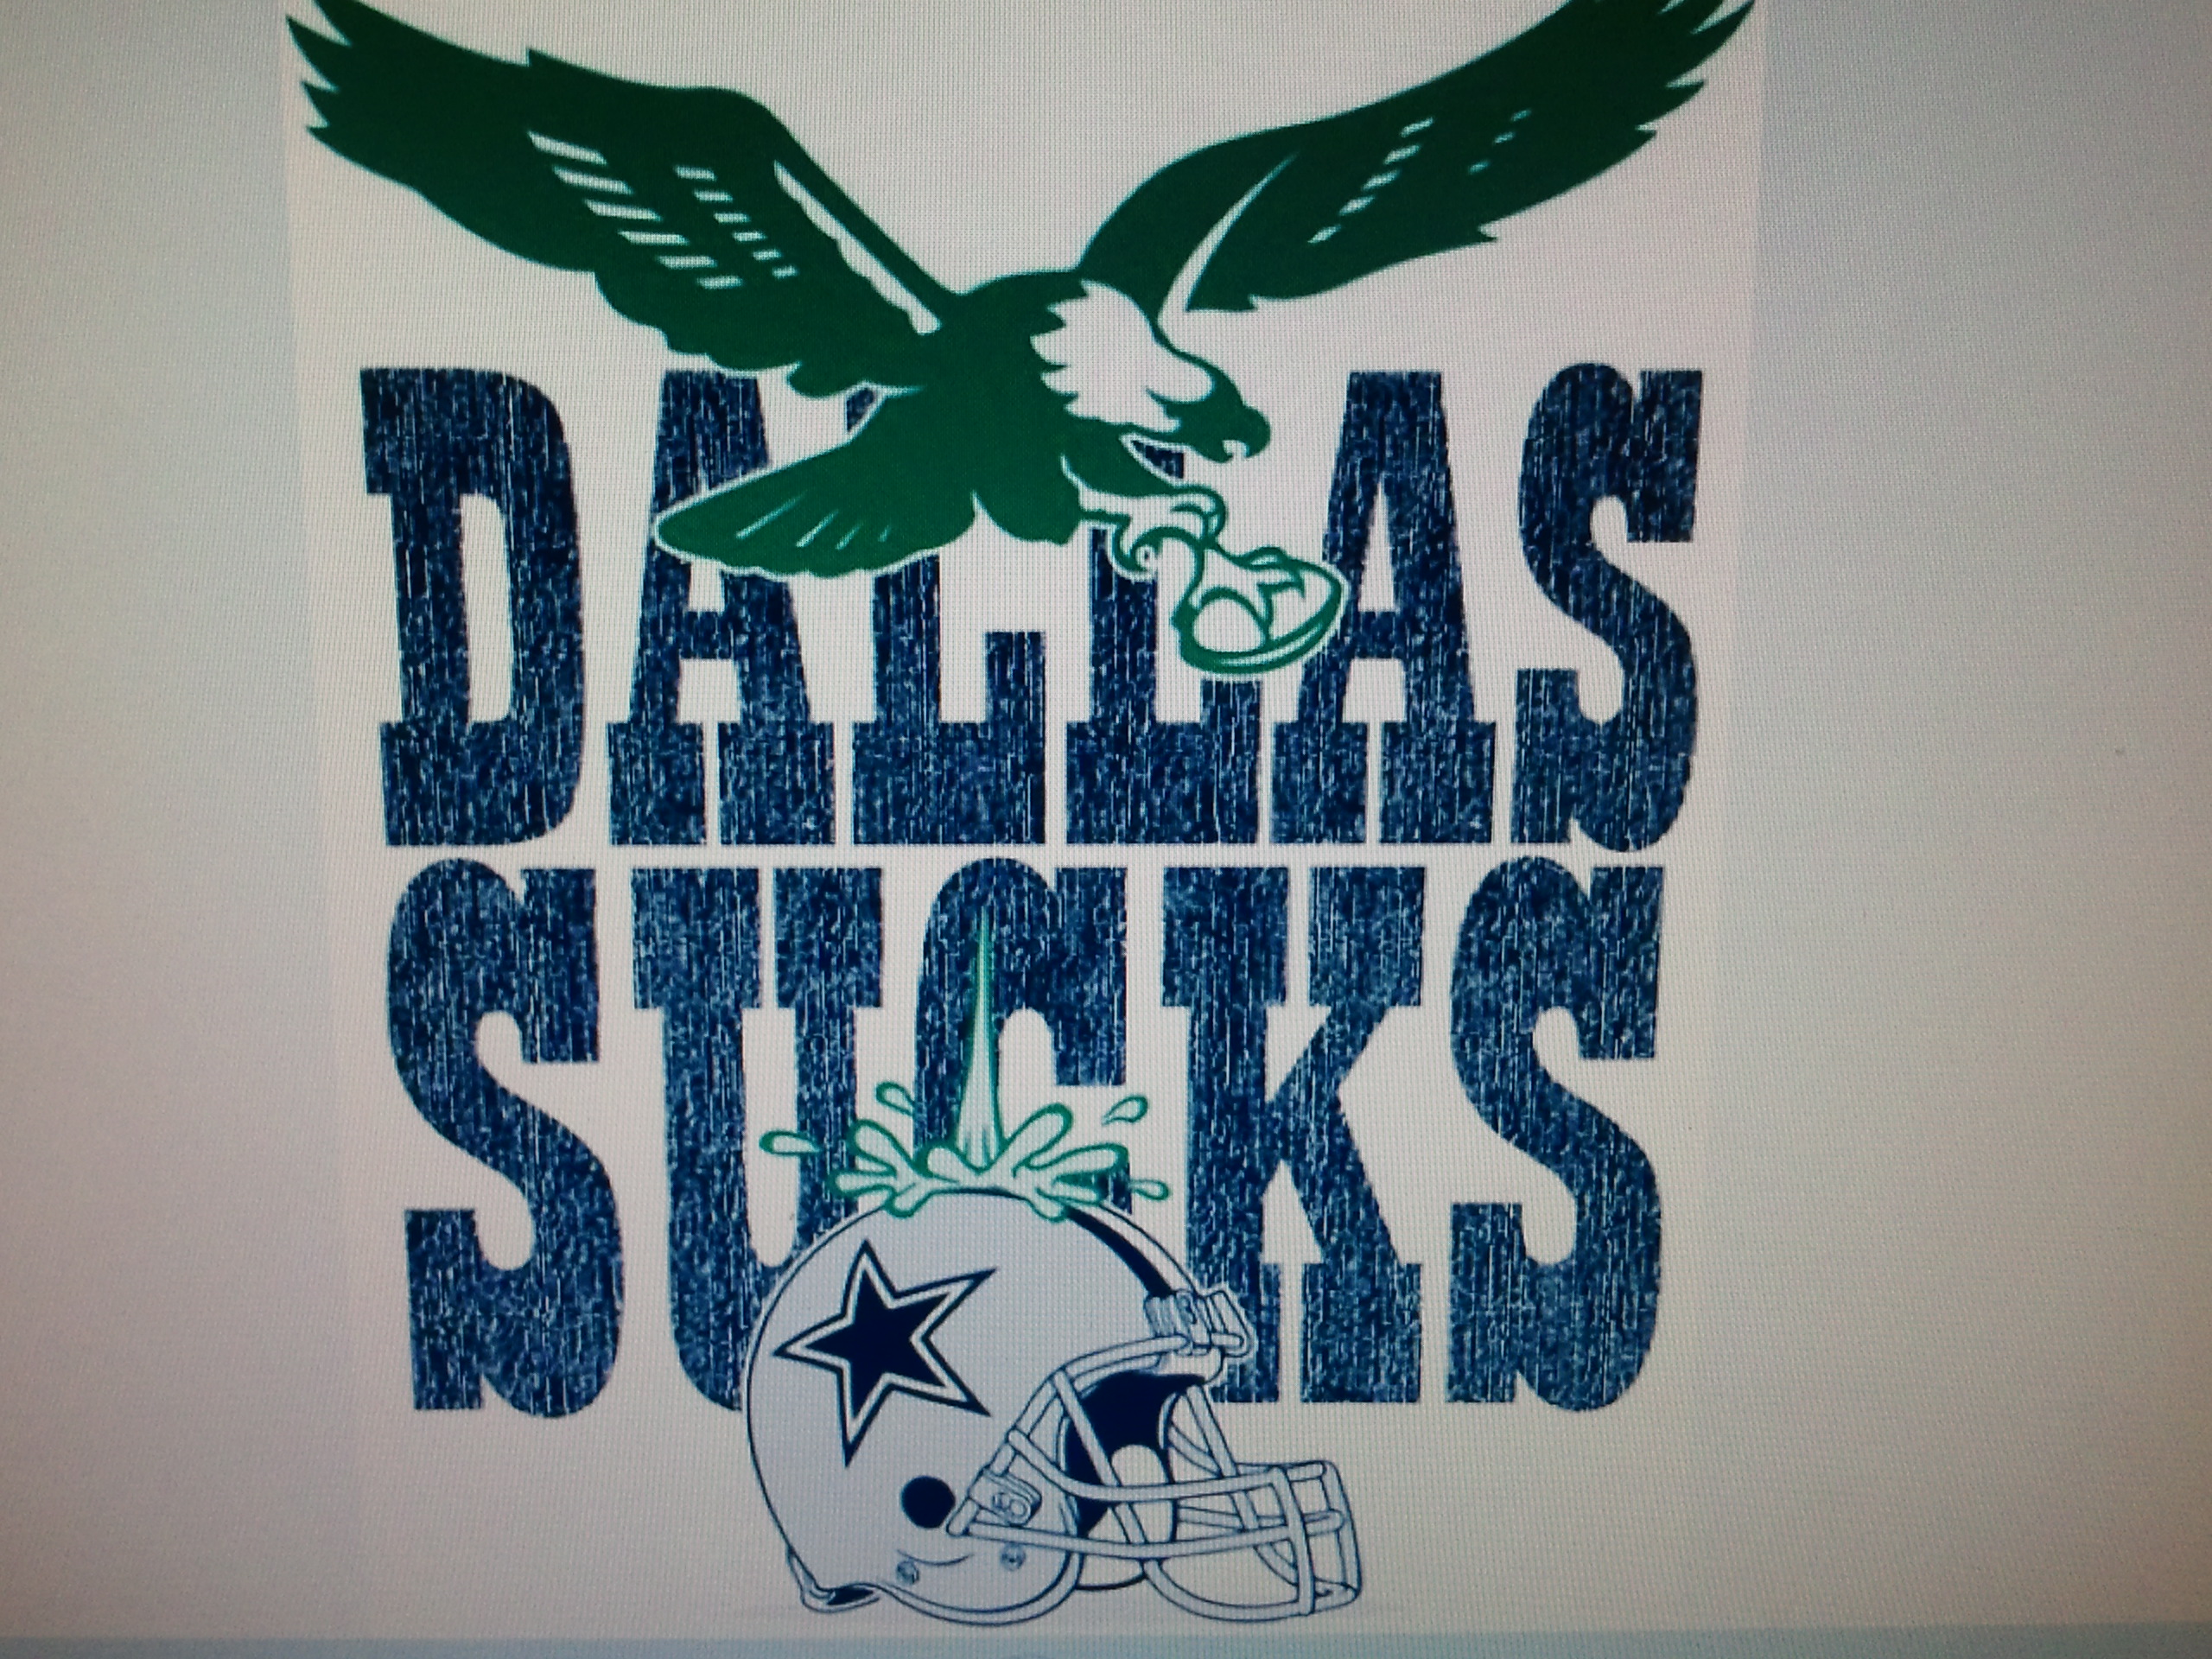 Dallas sucks